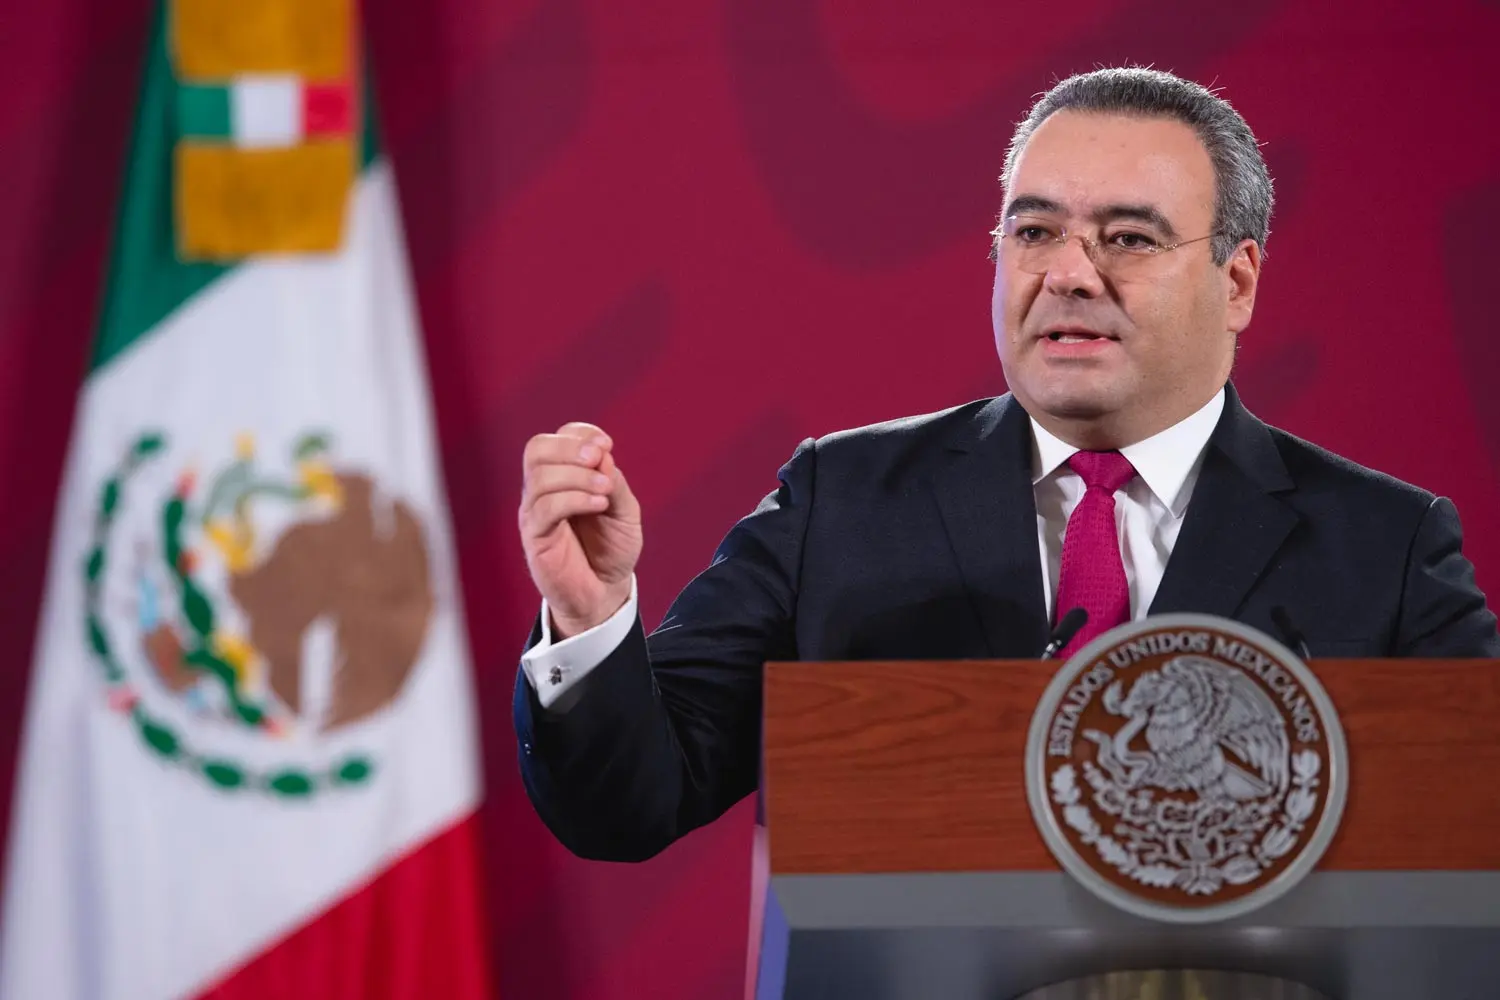 Carlos Romero Aranda, Factureras están migrando a otros países de América Latina, advierte Procuraduría Fiscal